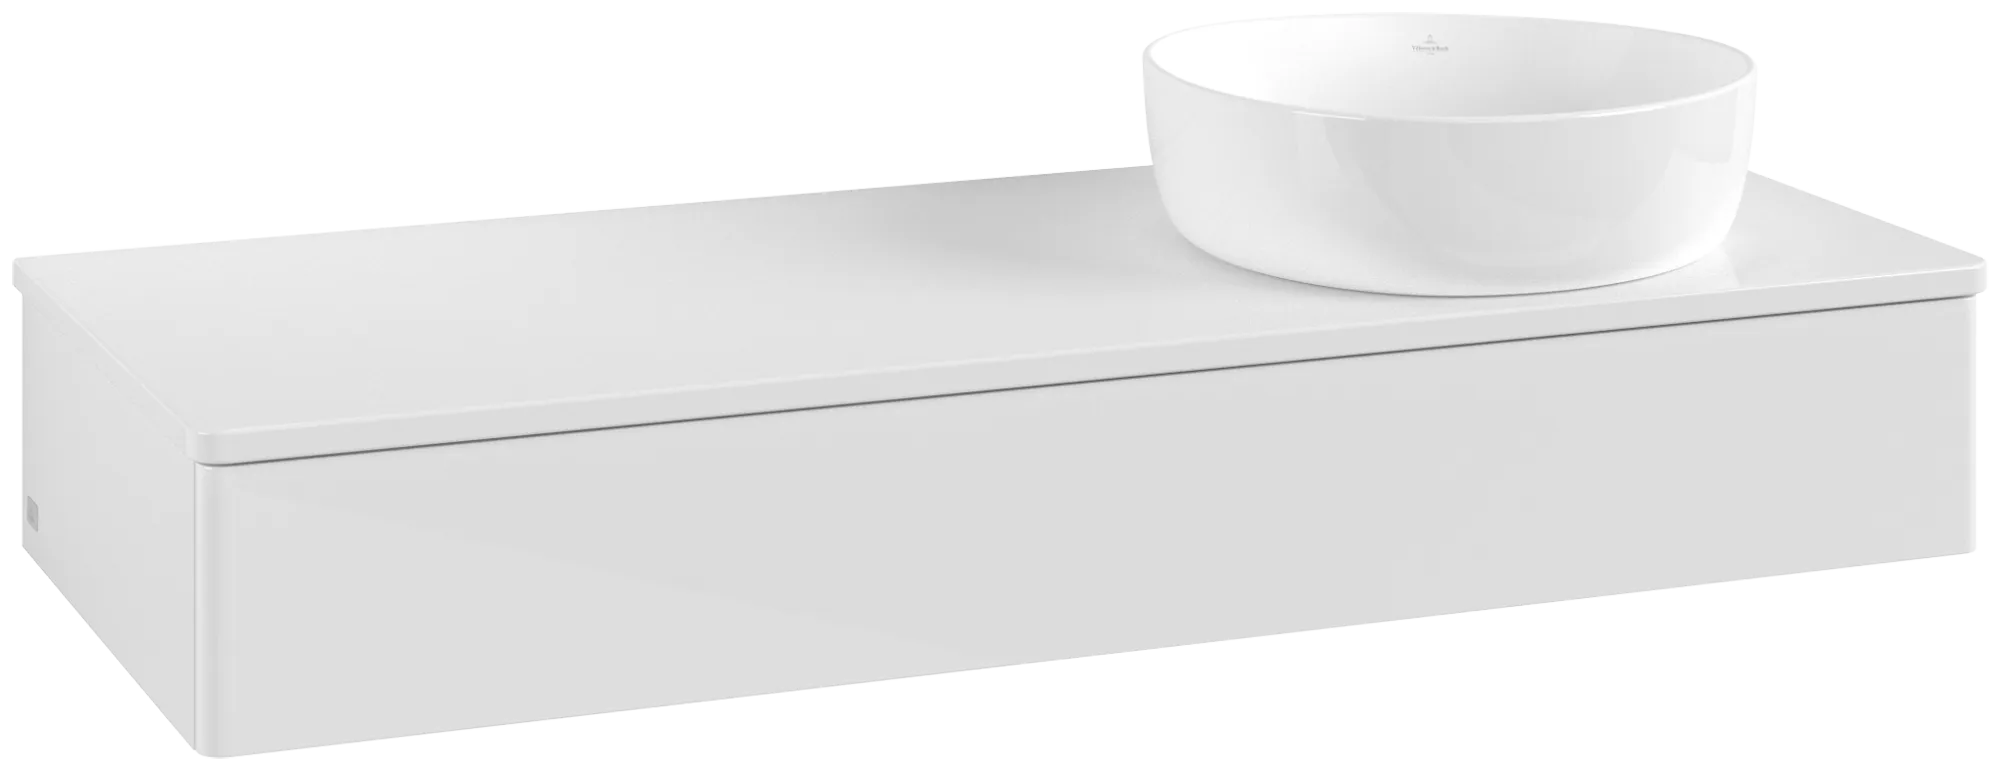 Bild von VILLEROY BOCH Antao Waschbeckenunterschrank, mit Beleuchtung, 1 Auszug, 1200 x 190 x 500 mm, Front ohne Struktur, Glossy White Lacquer / Glossy White Lacquer #L12050GF